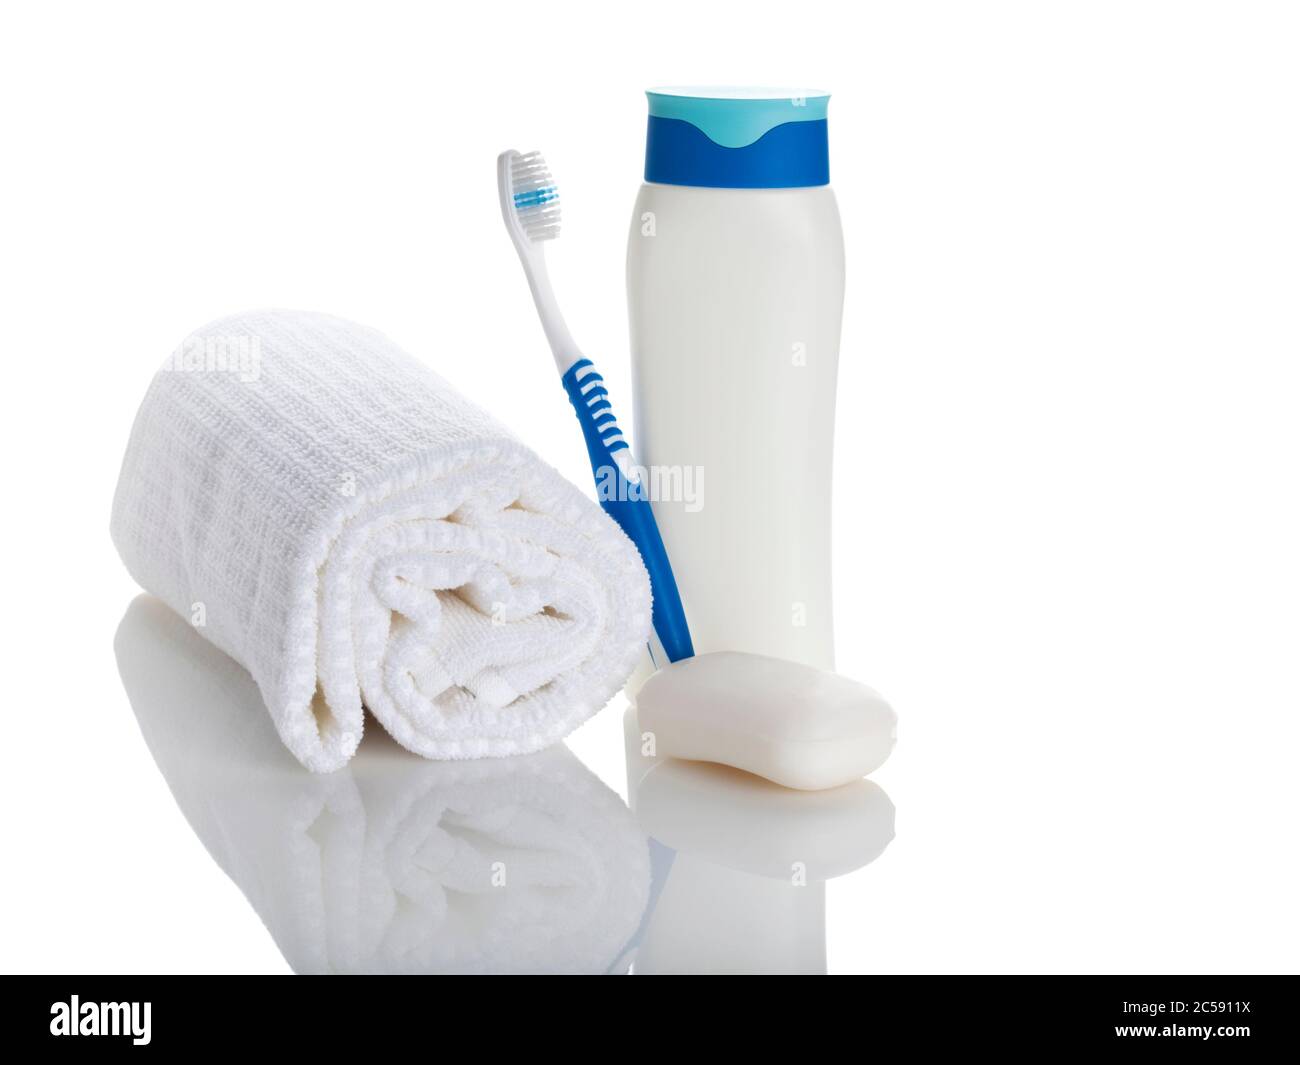 serviette roulée, brosse à dents, flacon de shampo et savon isolé sur blanc Banque D'Images